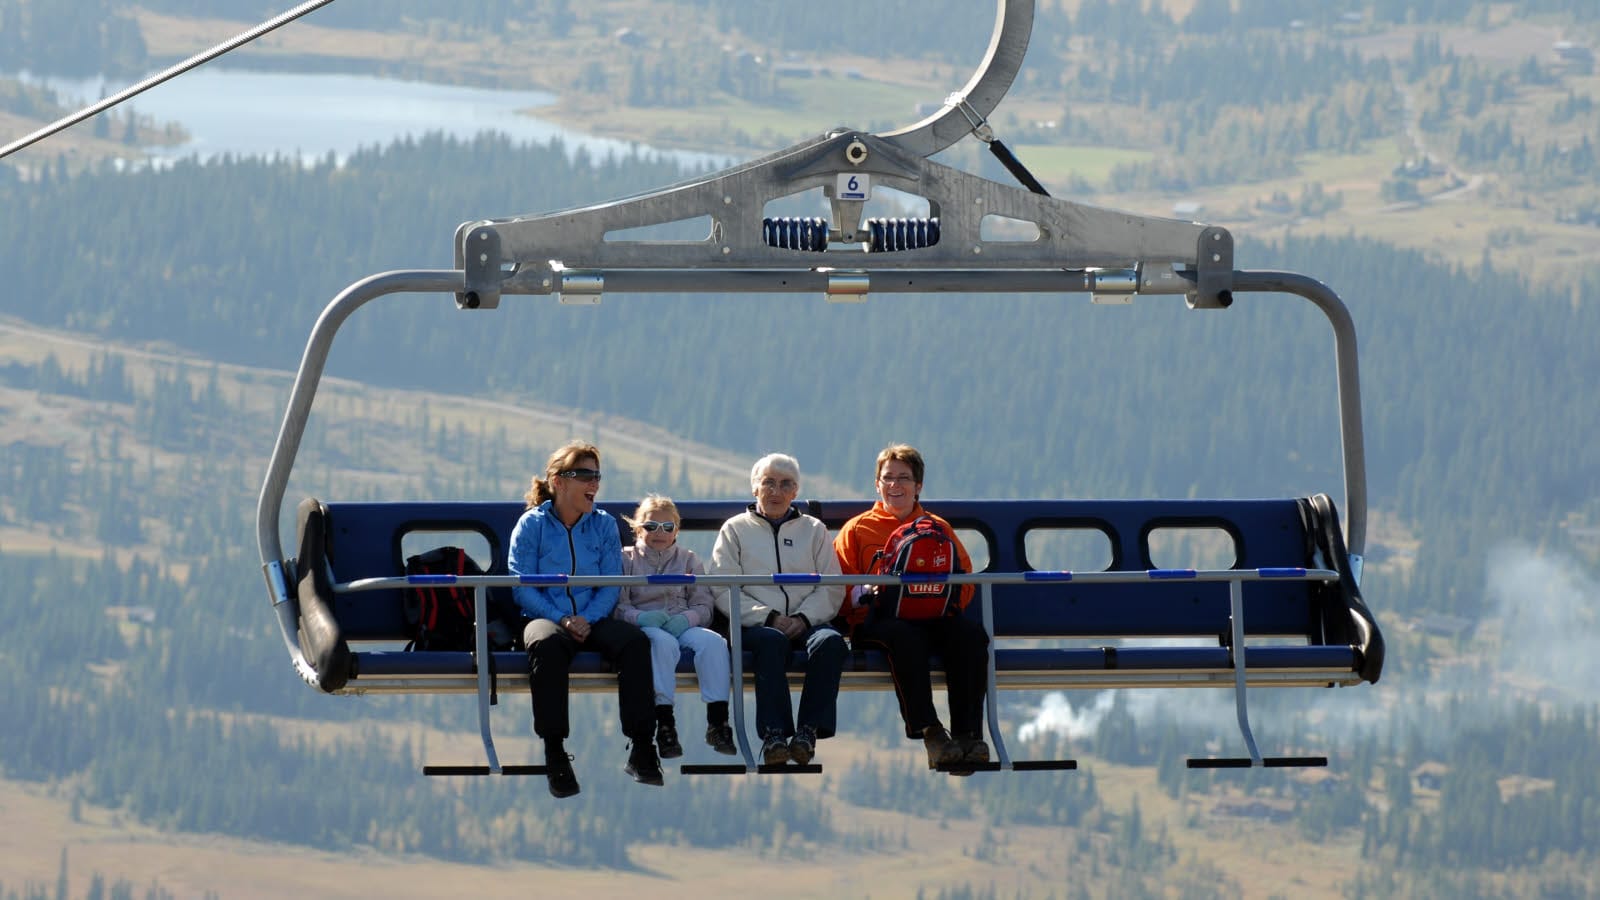 Fire mennesker i en skiheis.